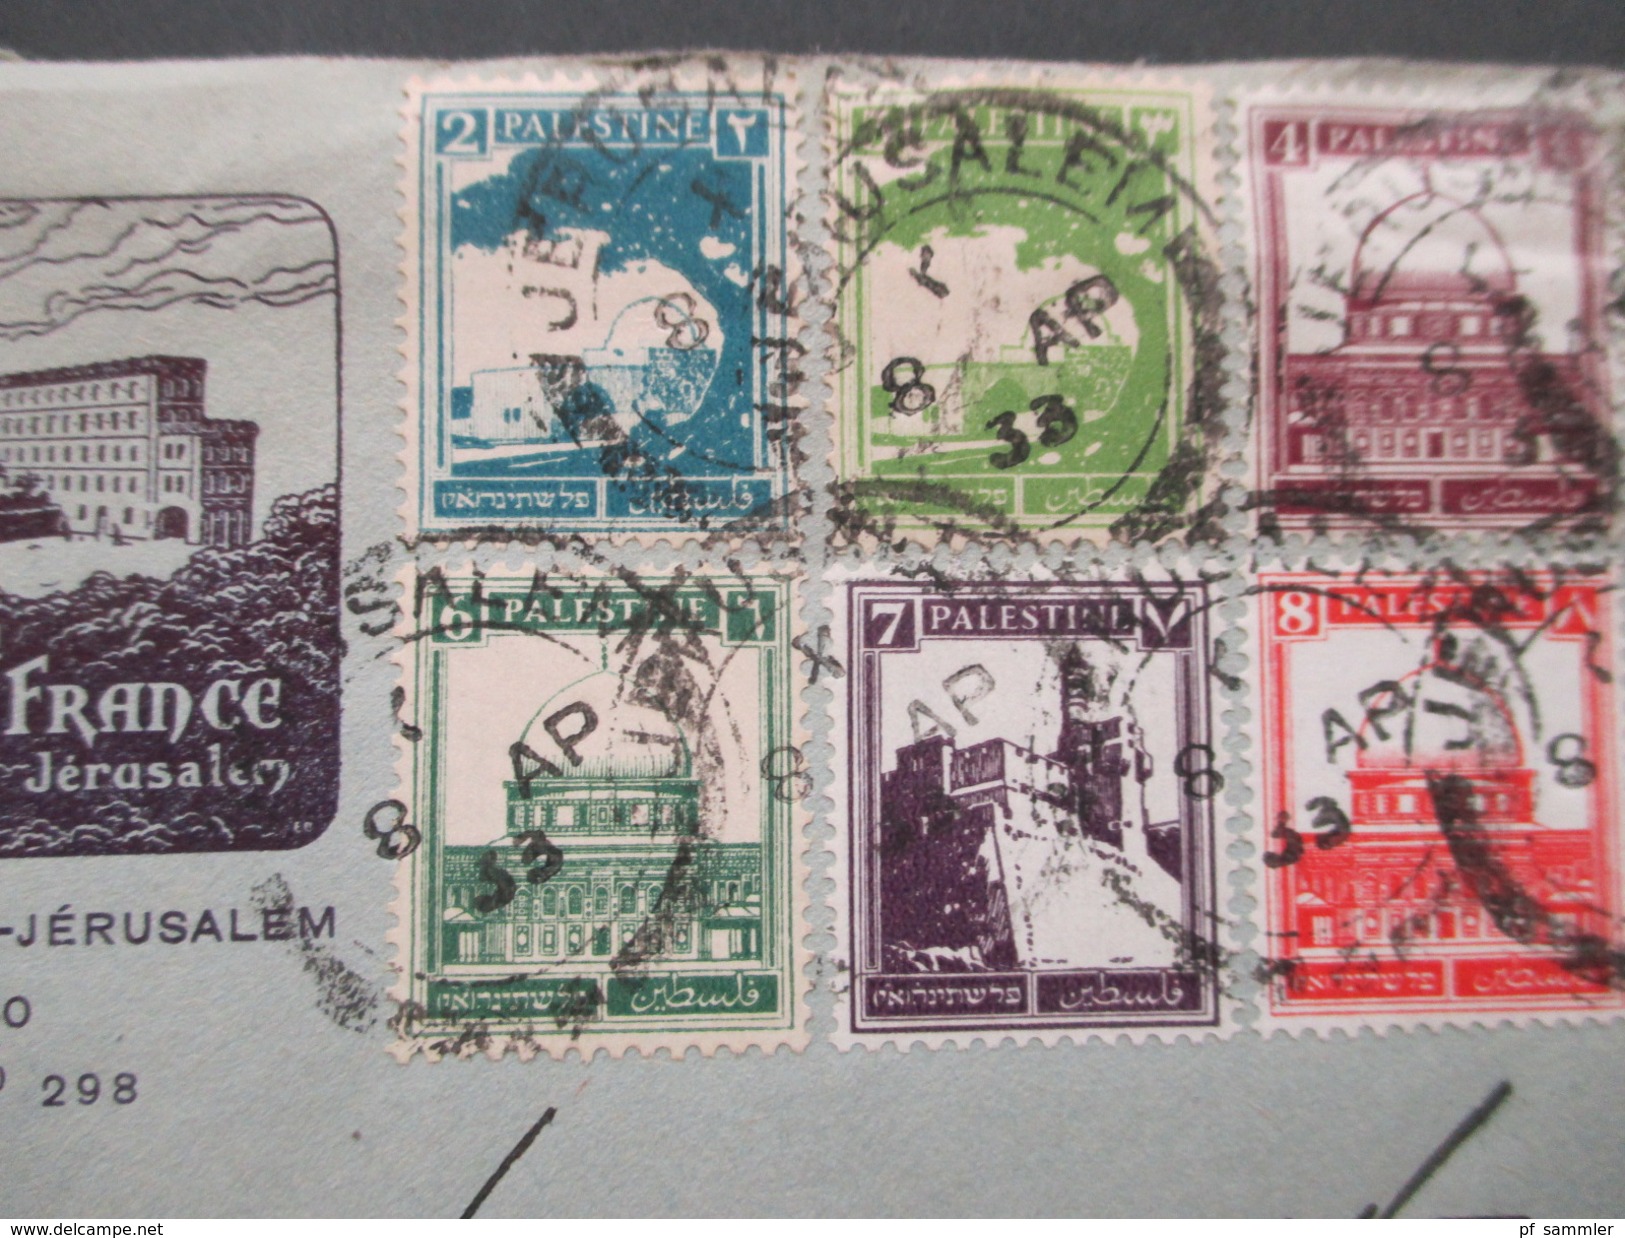 Palestine 1933 MiF Umschlag Mit Inhalt: Hotellerie N.D. De France Jerusalem. Hotel. Briefpapier Vom Hotel!! + 2 Fotos. - Palästina